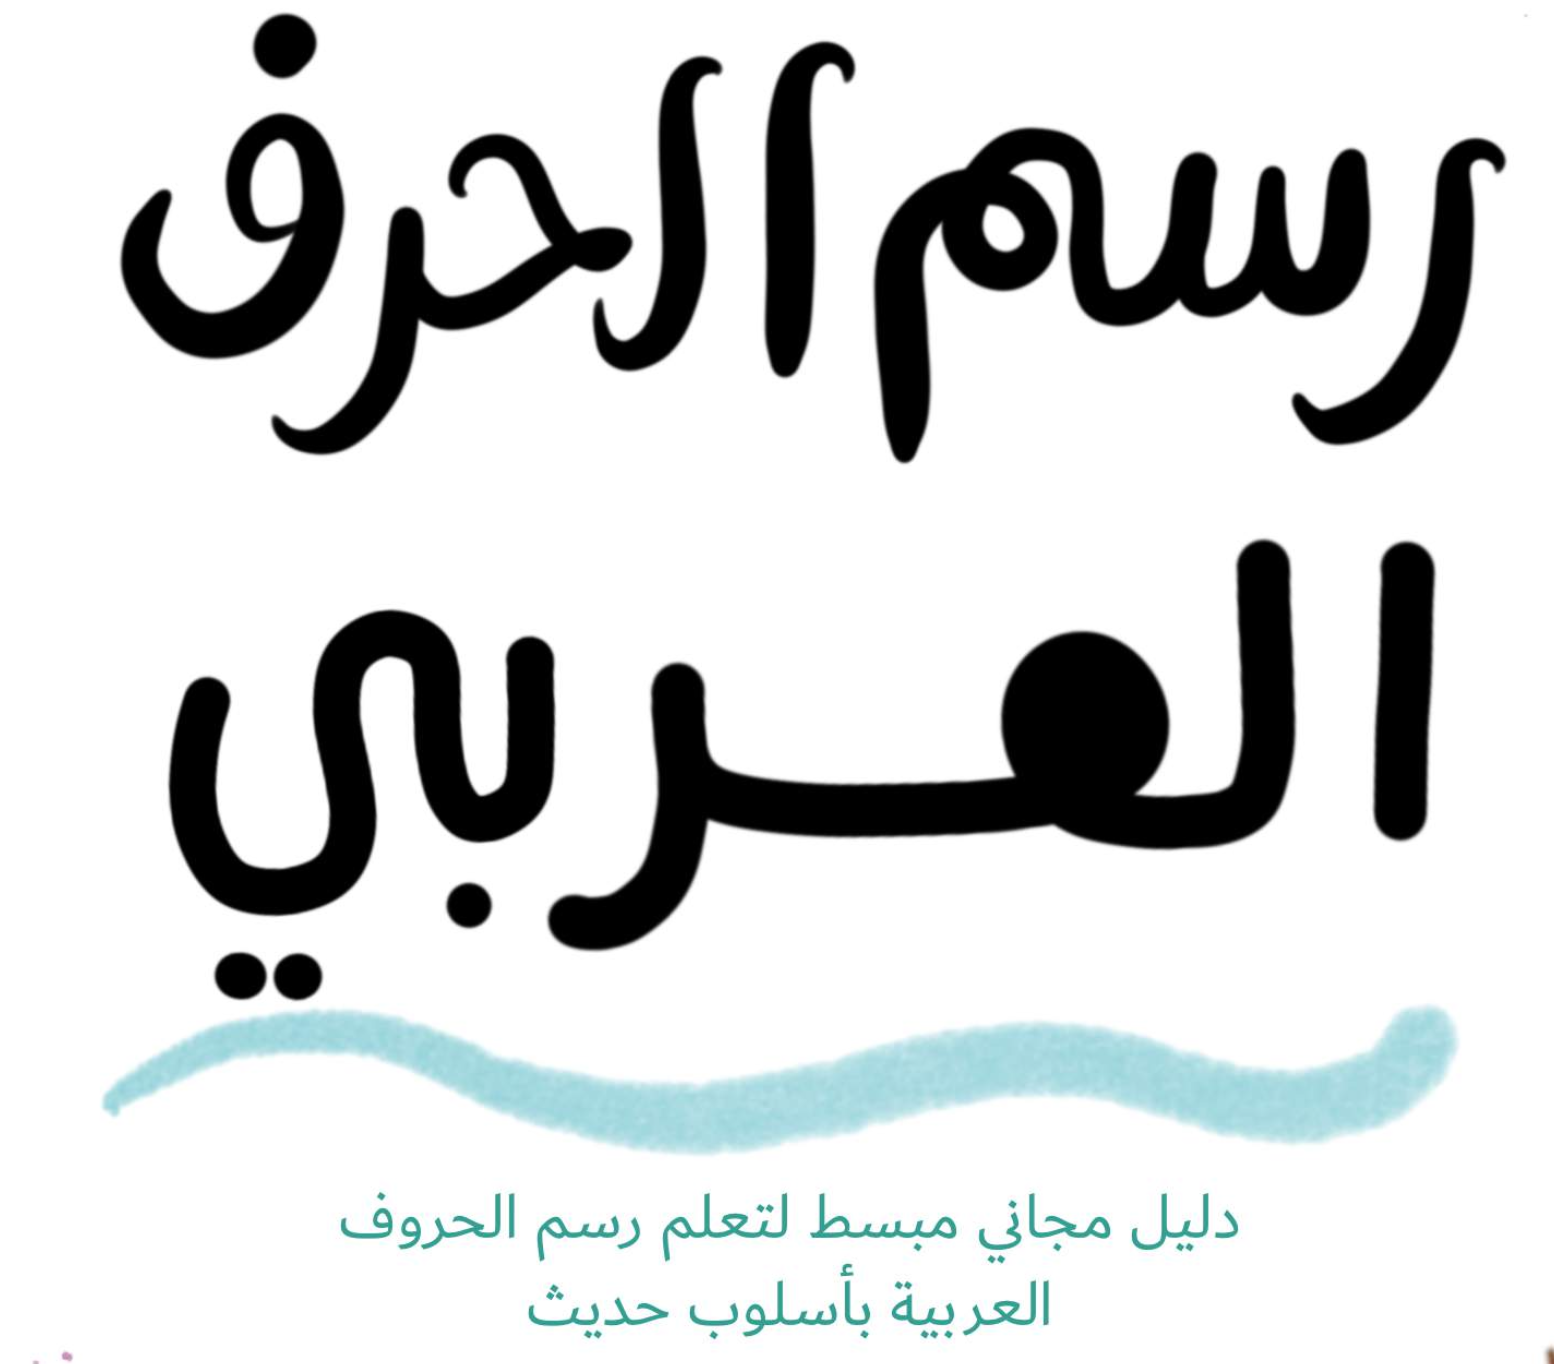 دليل الحرف العربي - مجانا